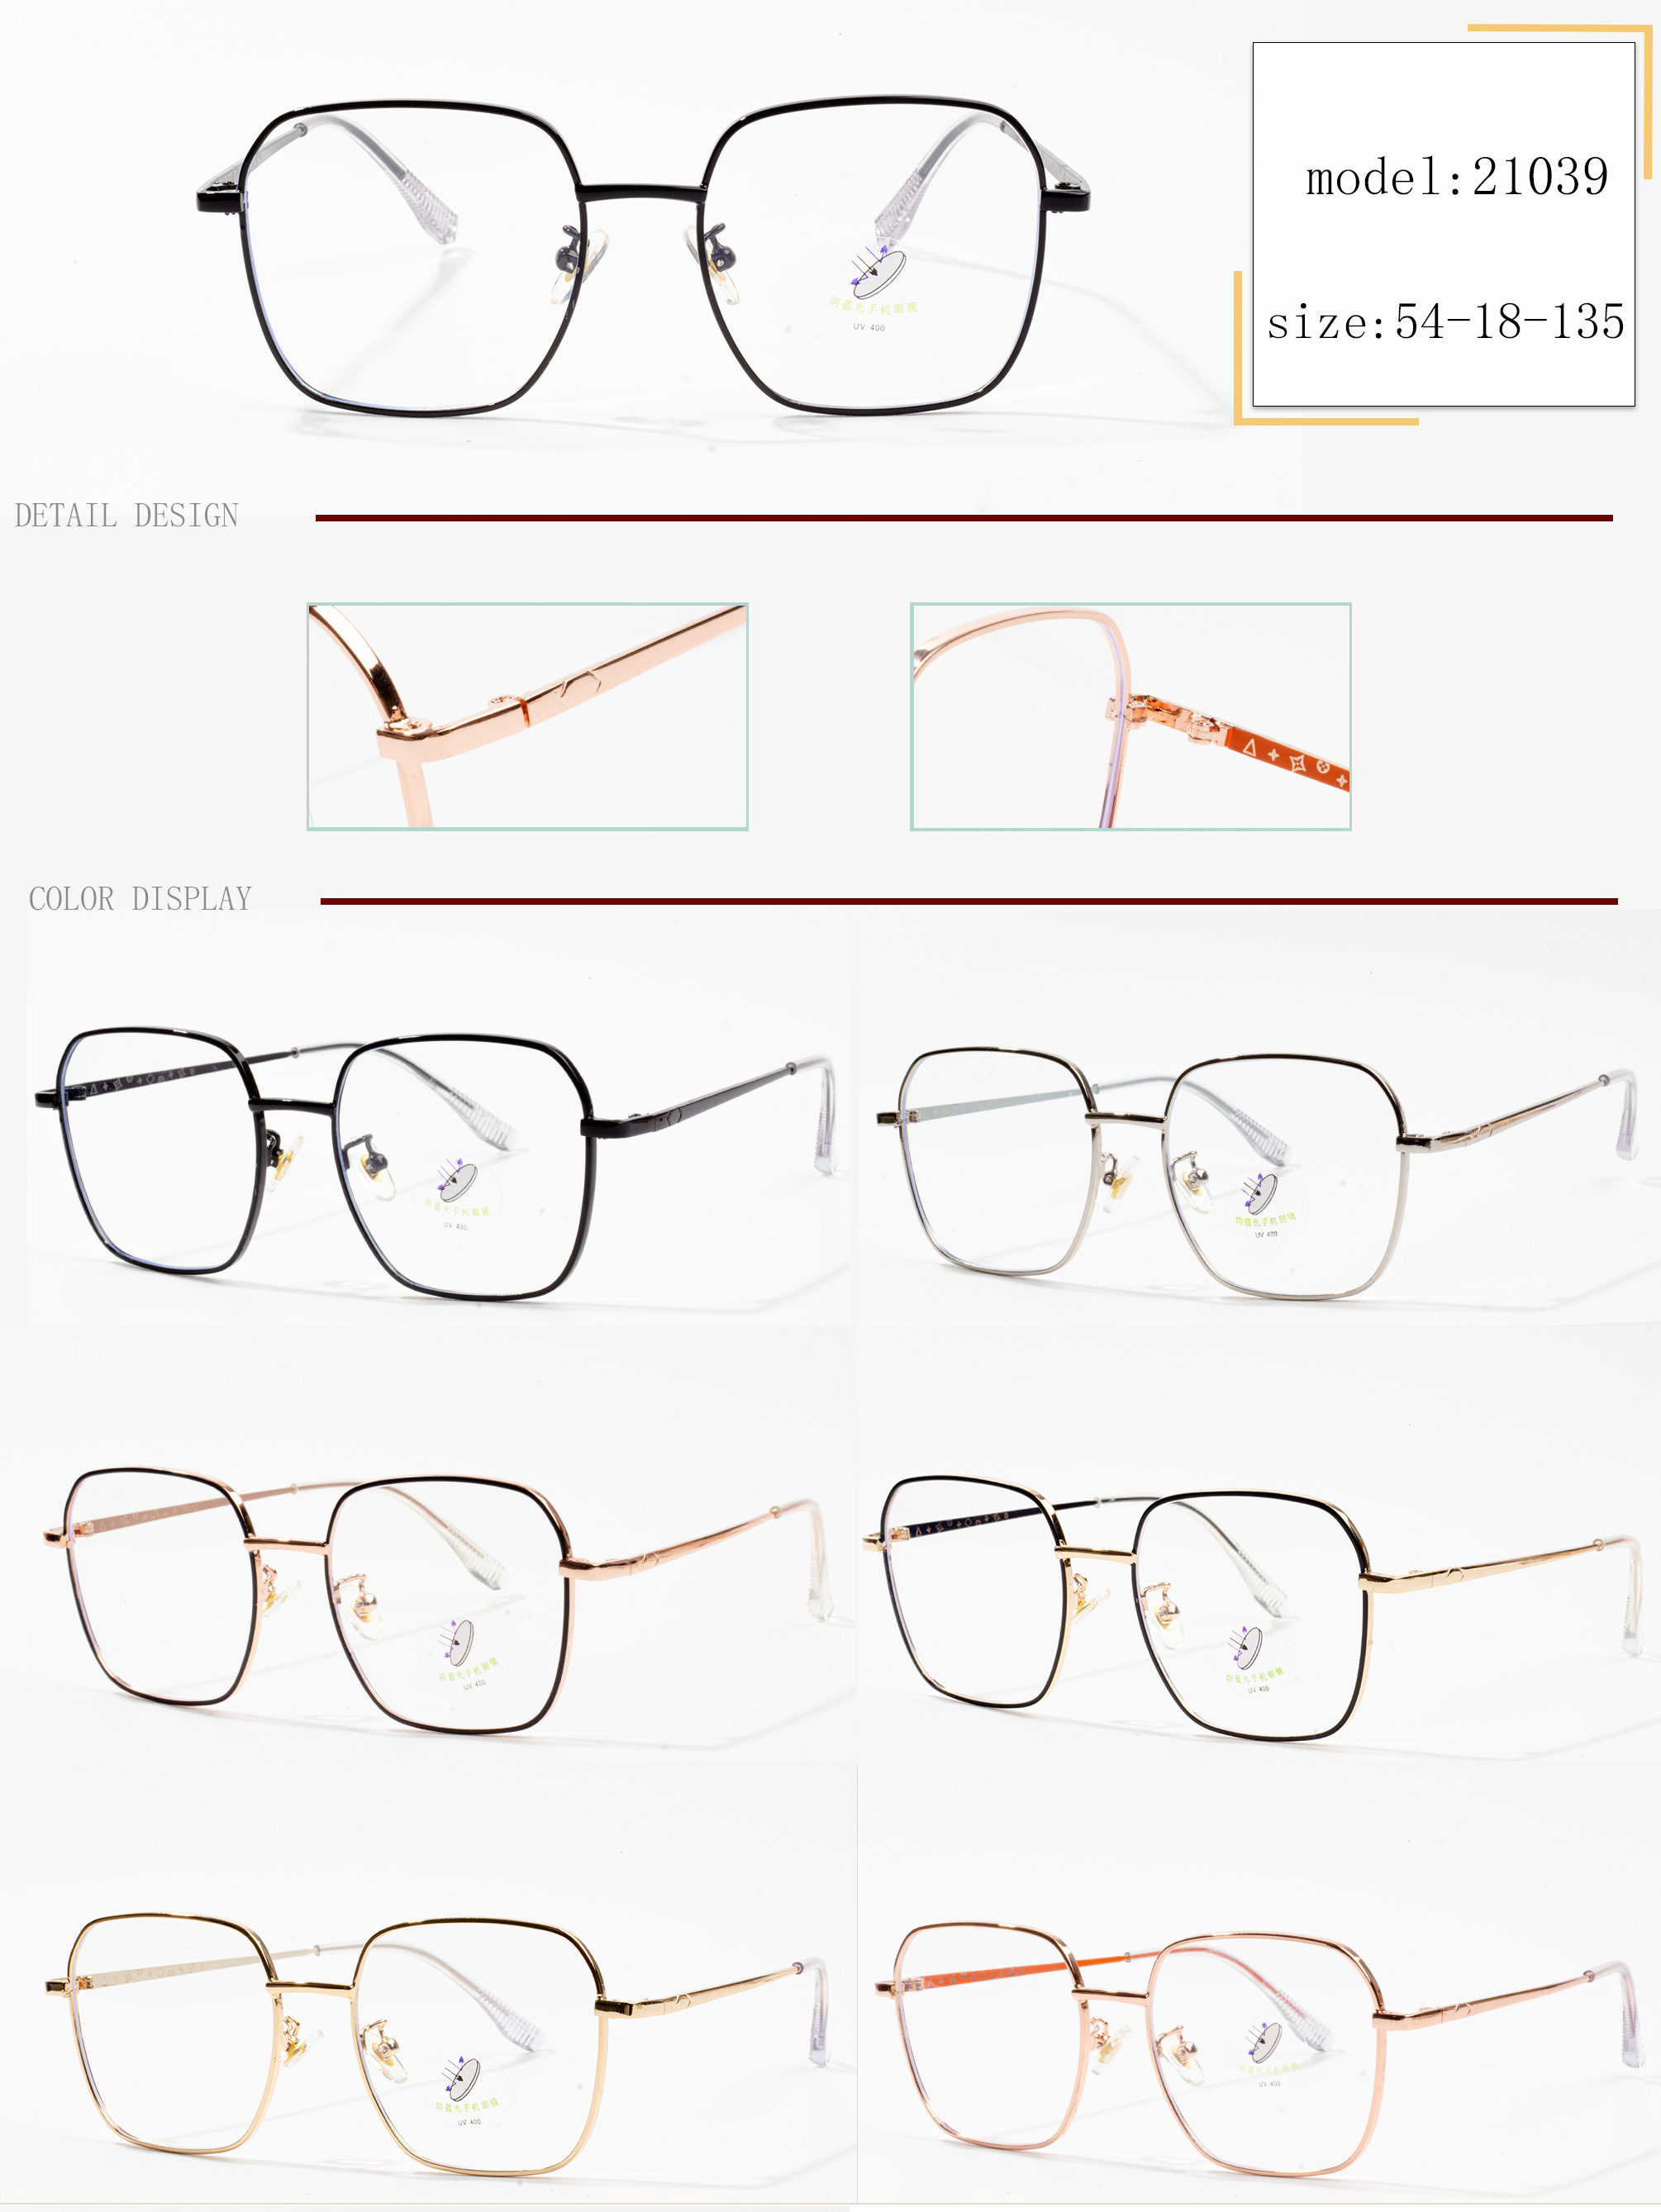 korniza të syzeve të stilistëve